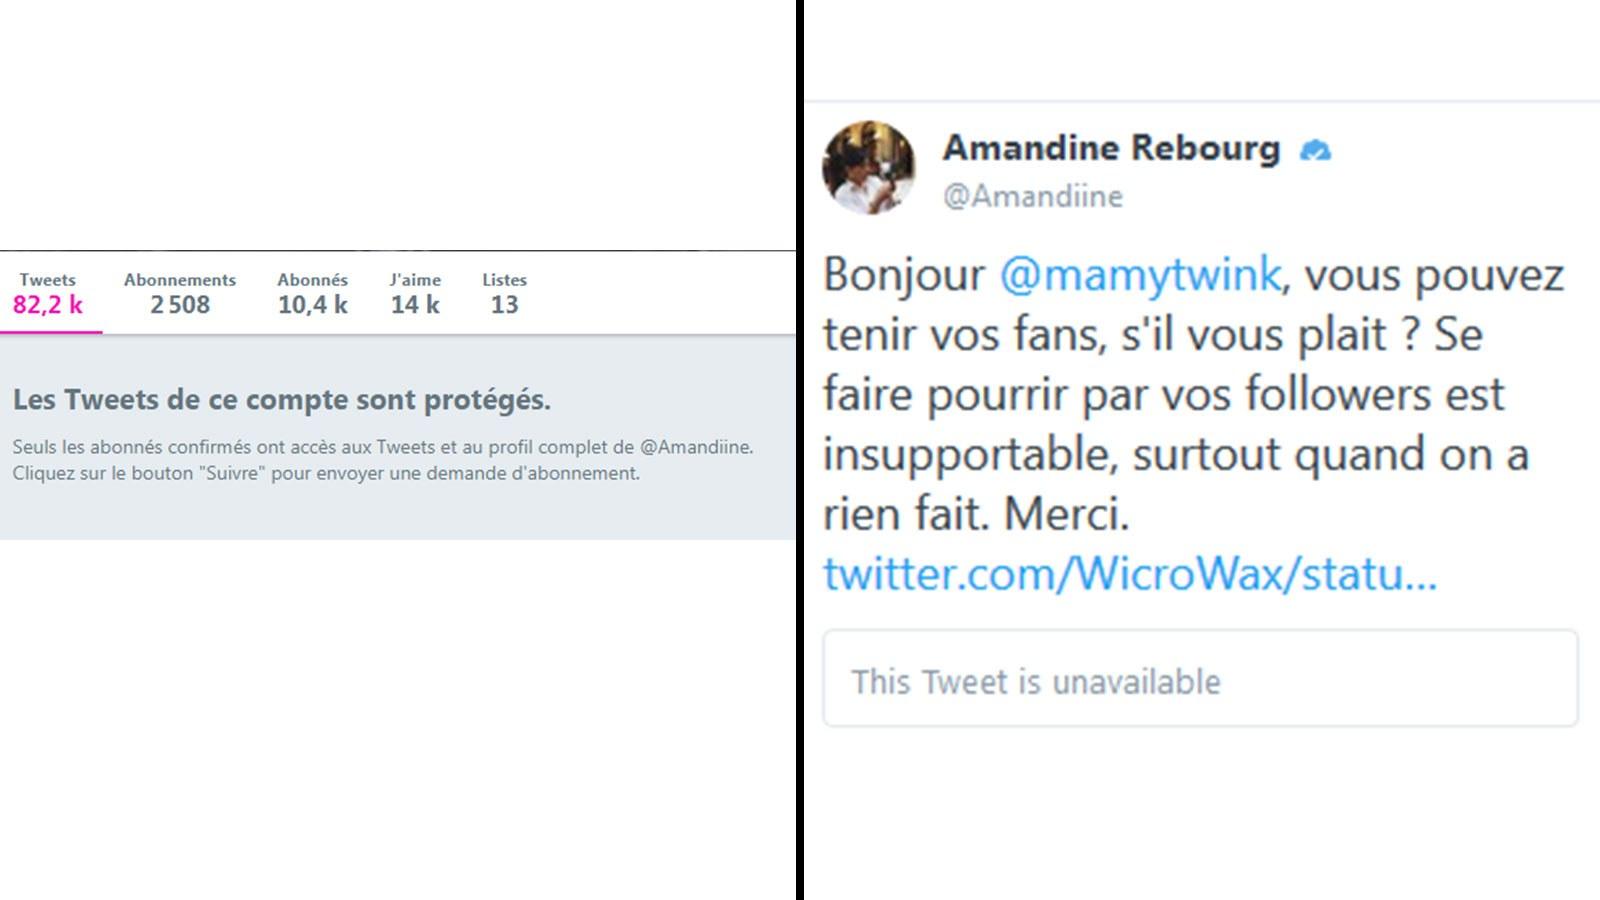 Amandine Rebourg / Twitter